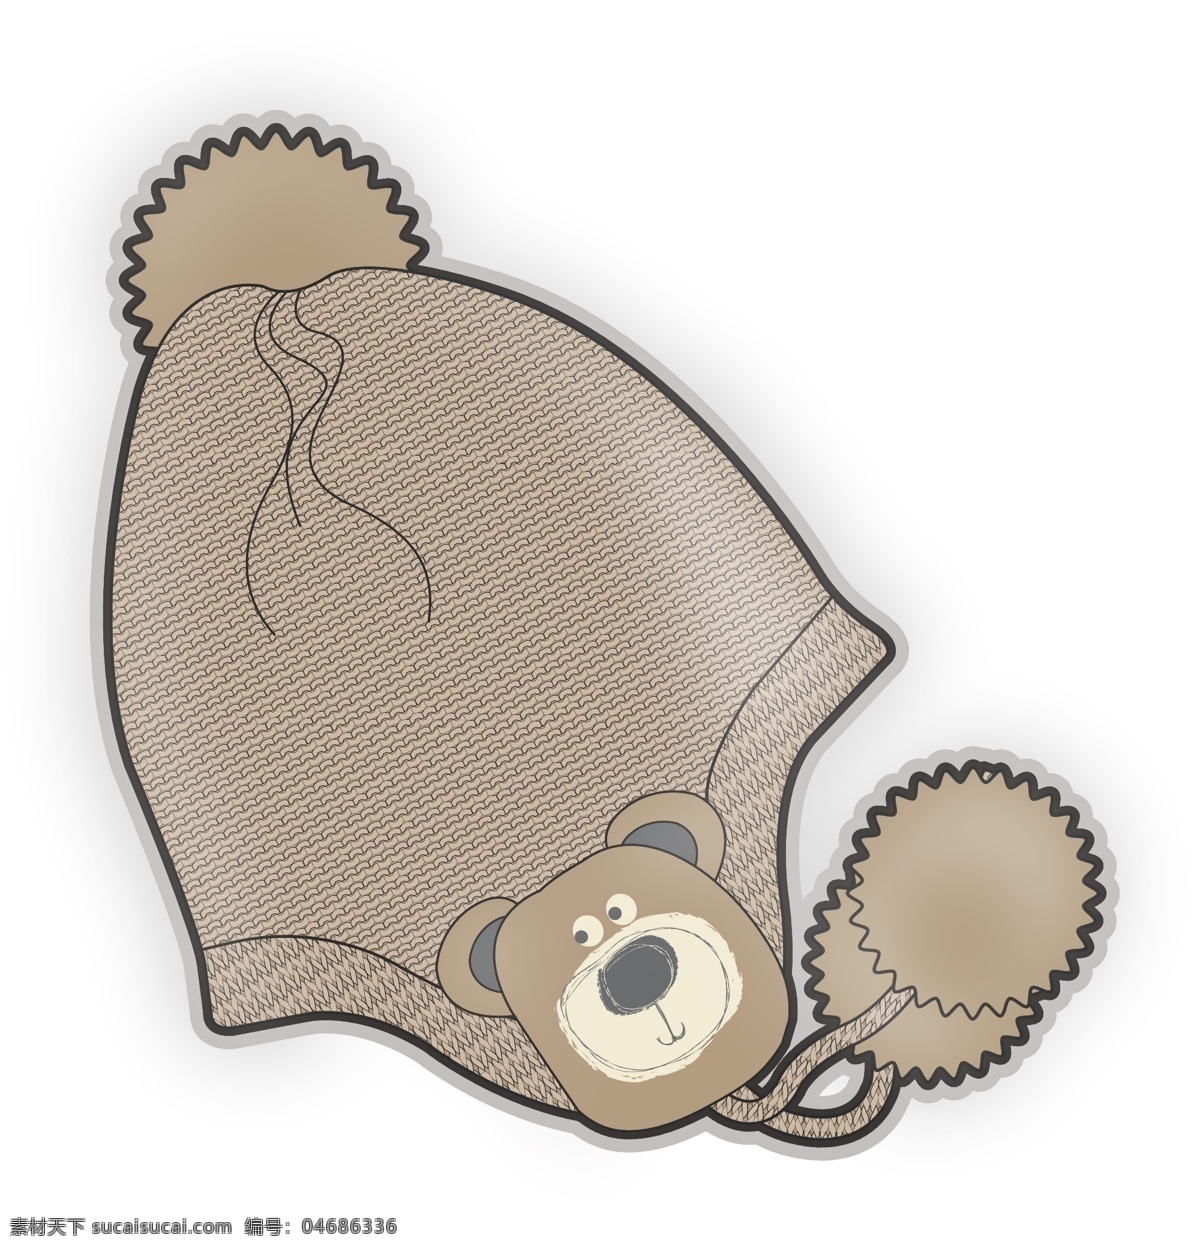 咖啡色 小 熊 毛线 彩色 婴儿 服装设计 矢量 帽子 冬天 儿童服装设计 可爱 手绘 保暖 线条 源文件